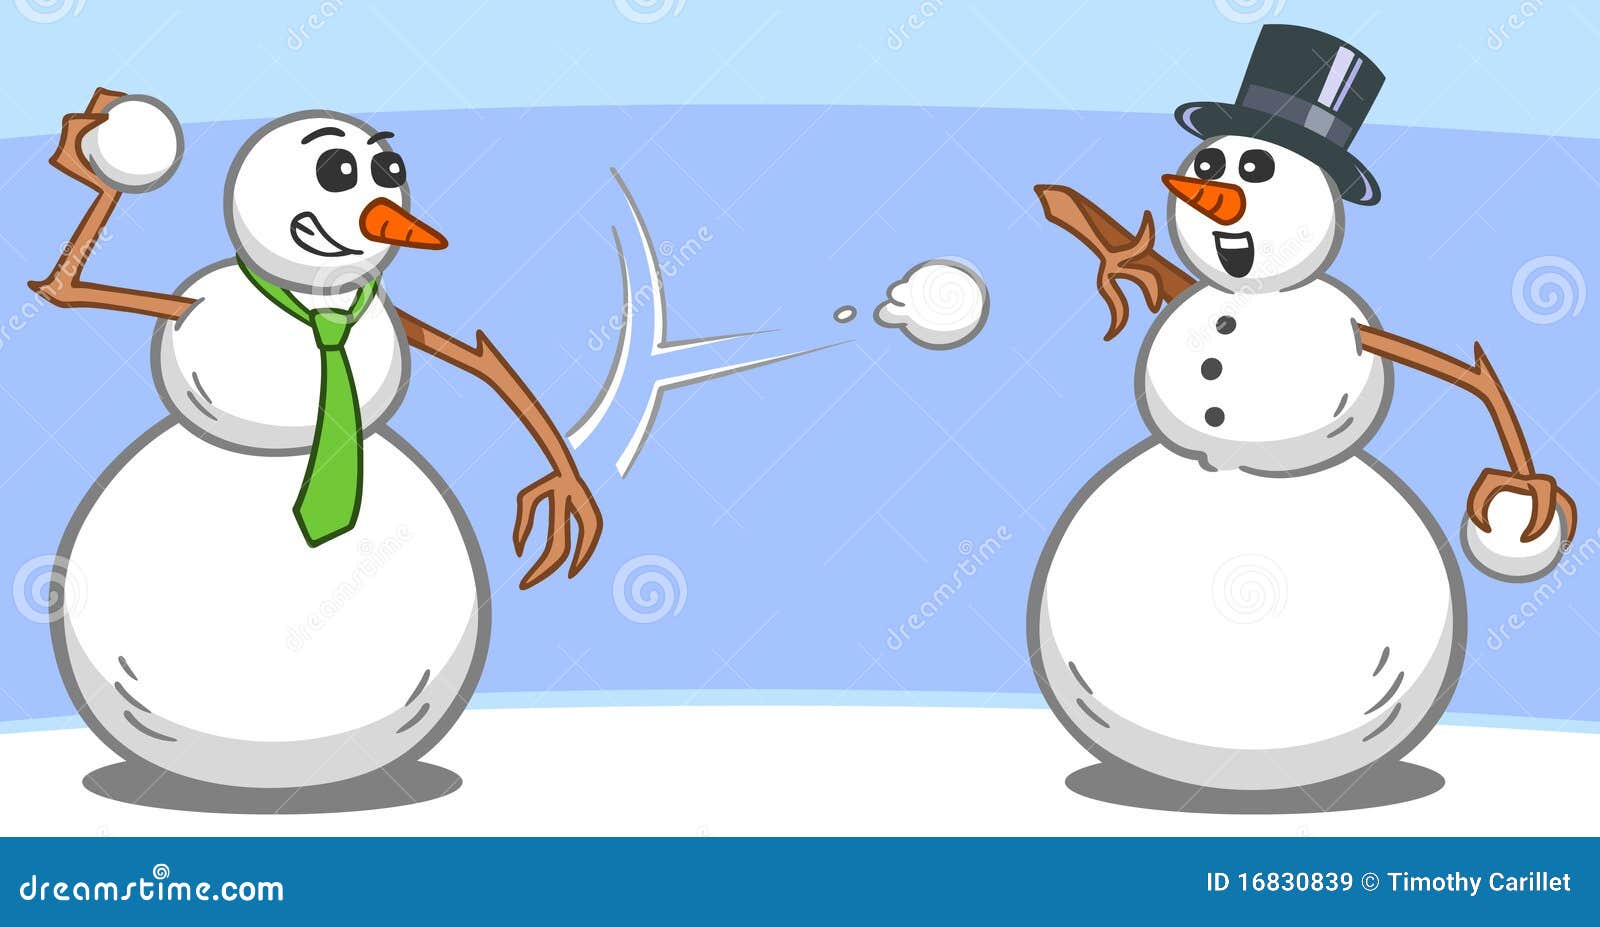 Играть в снежки снеговик